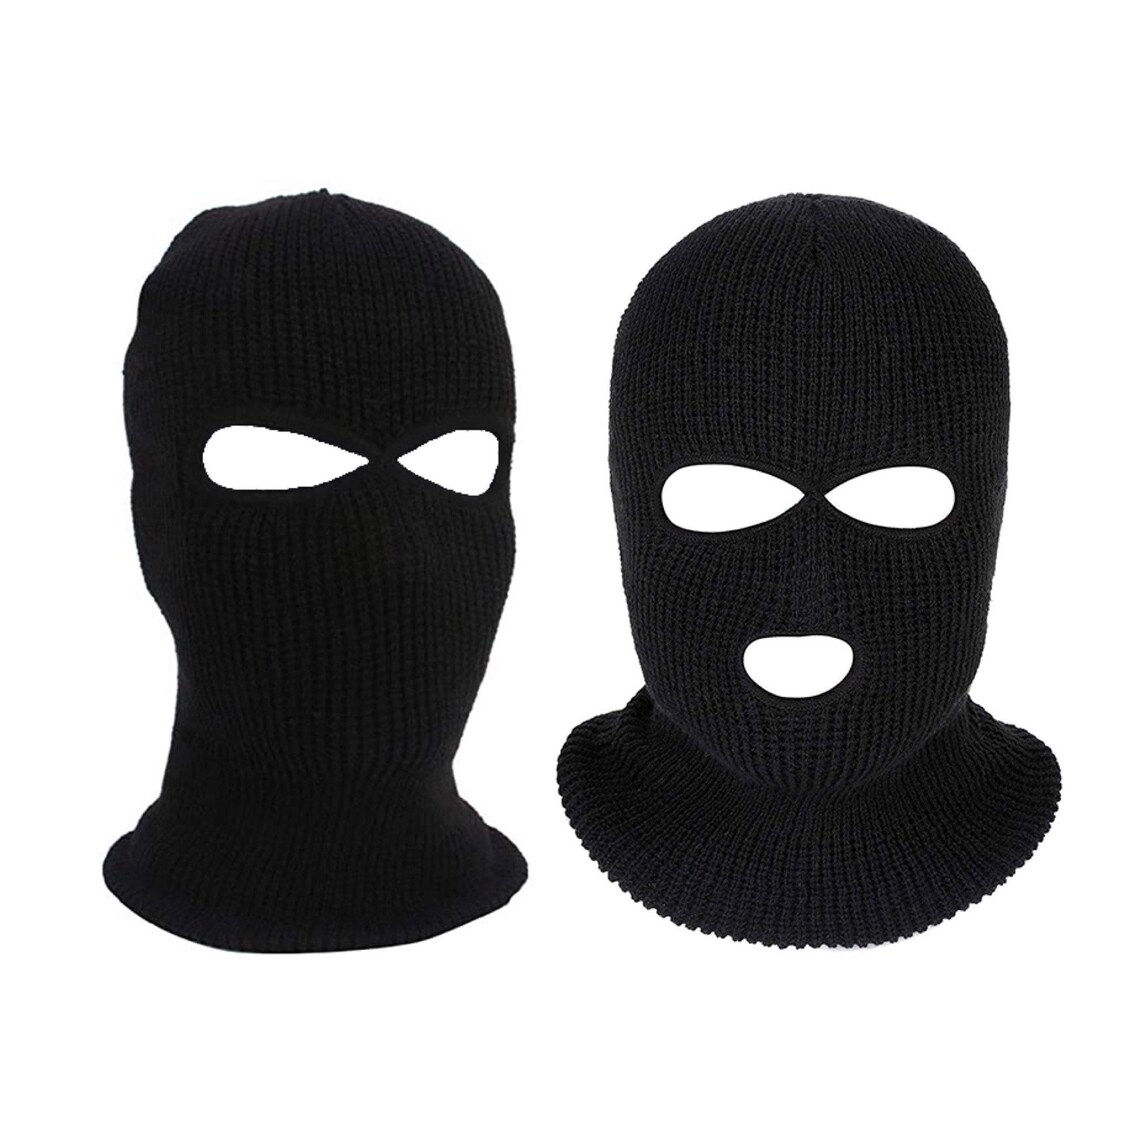 3 Hole or 2 Hole Ski Mask Knitted Black Balaclava Snood - Etsy